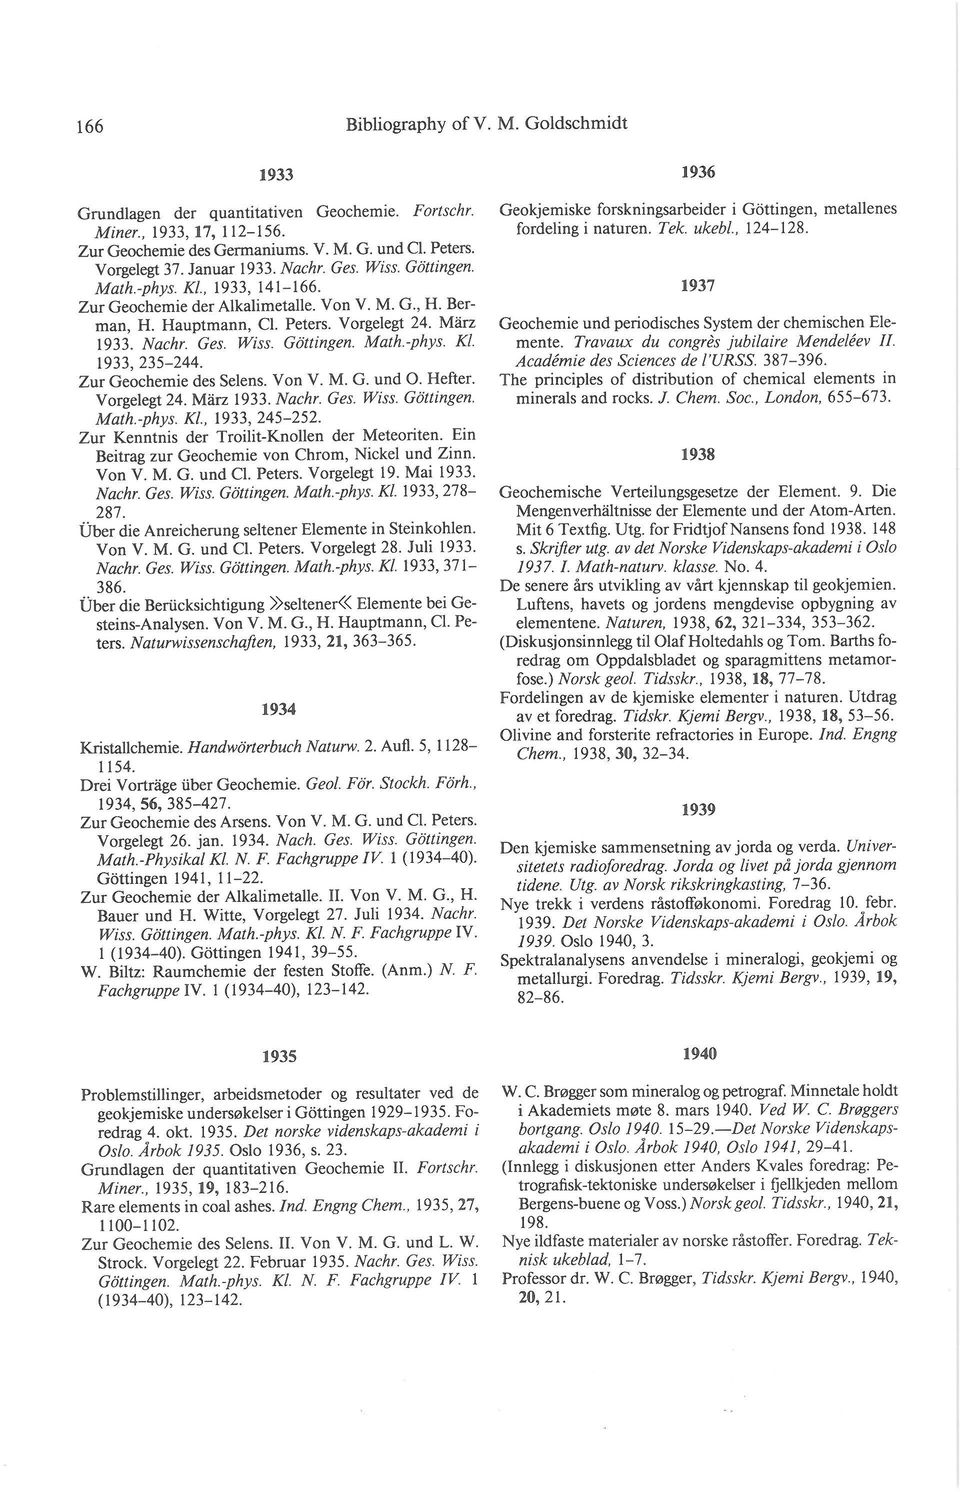 KI. 1933,235-244. Zur Geochemie des Selens. Von V. M. G. und O. Hefter. Vorgelegt 24. Miirz 1933. Nachr. Ges. Wiss. Gottingen. Math-phys. KI., 1933,245-252.